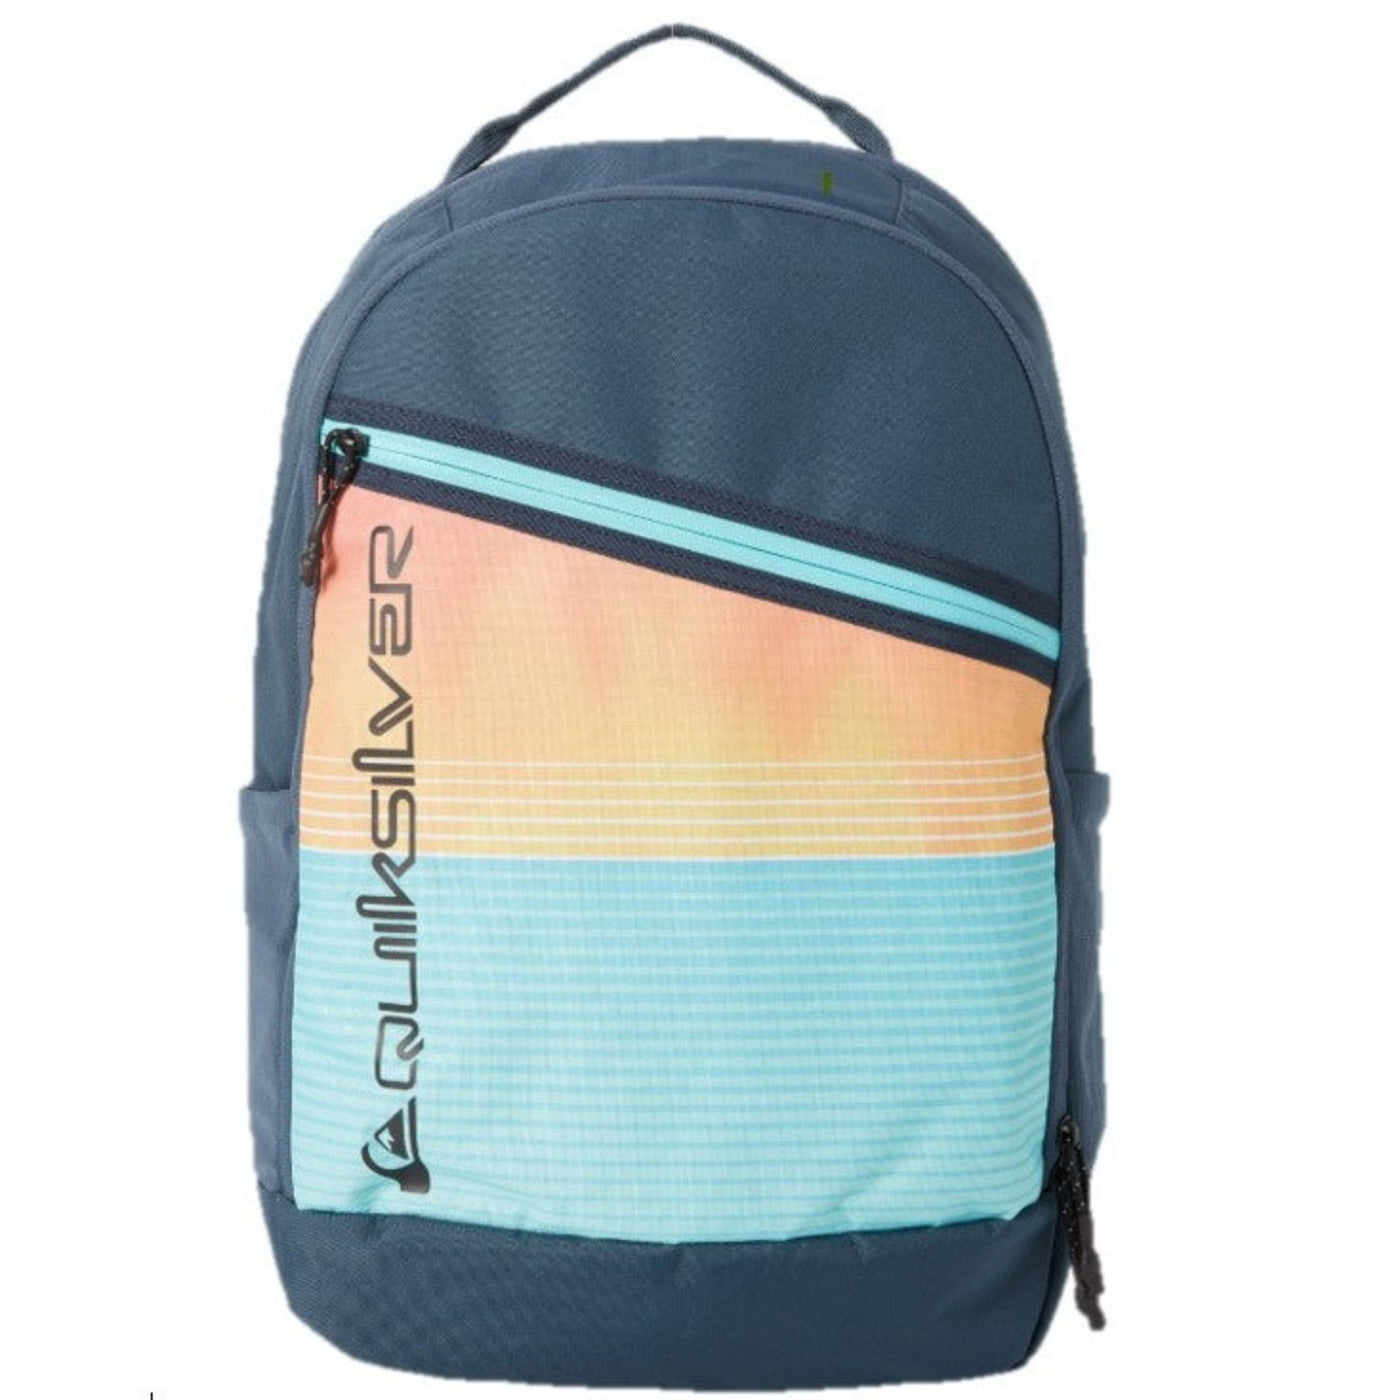 Quiksilver Schoolie 2.0 30L Backpack - Midnight Navy